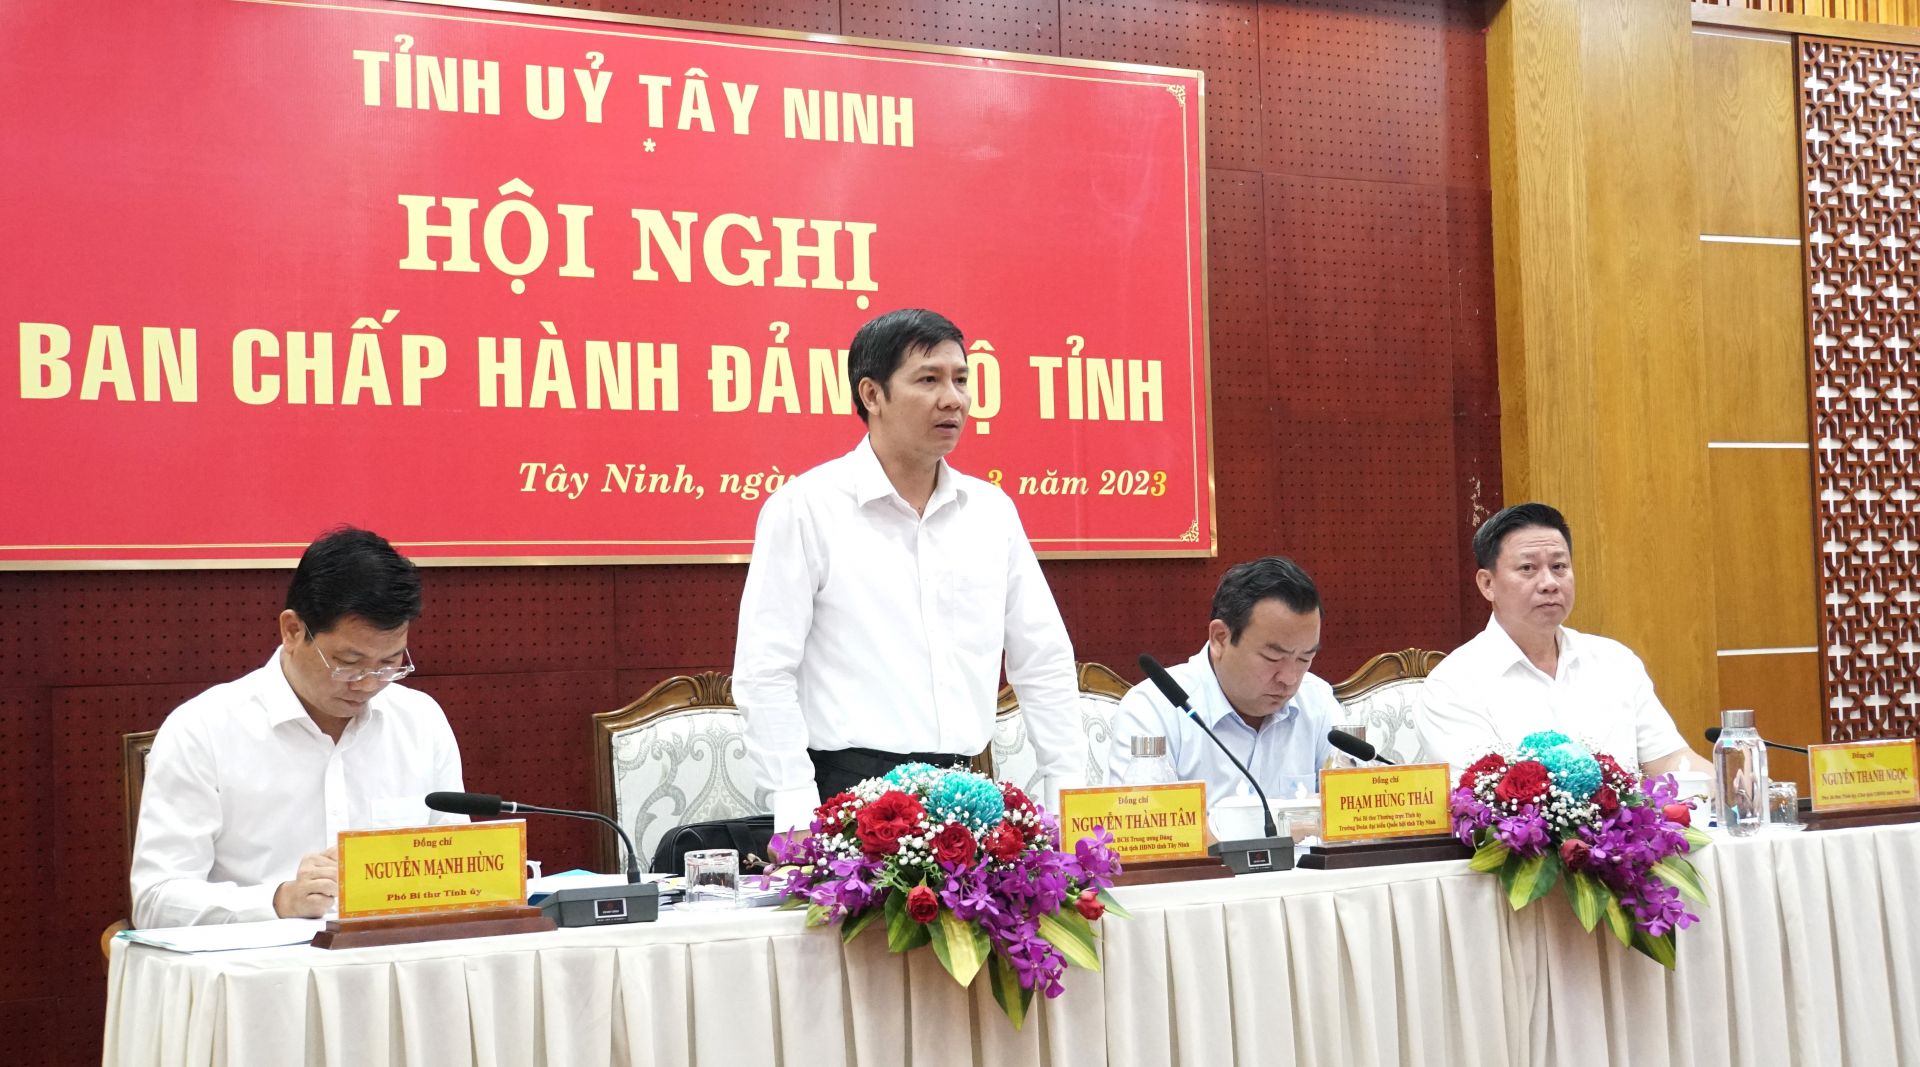 Điểm báo in Tây Ninh ngày 01.04.2023